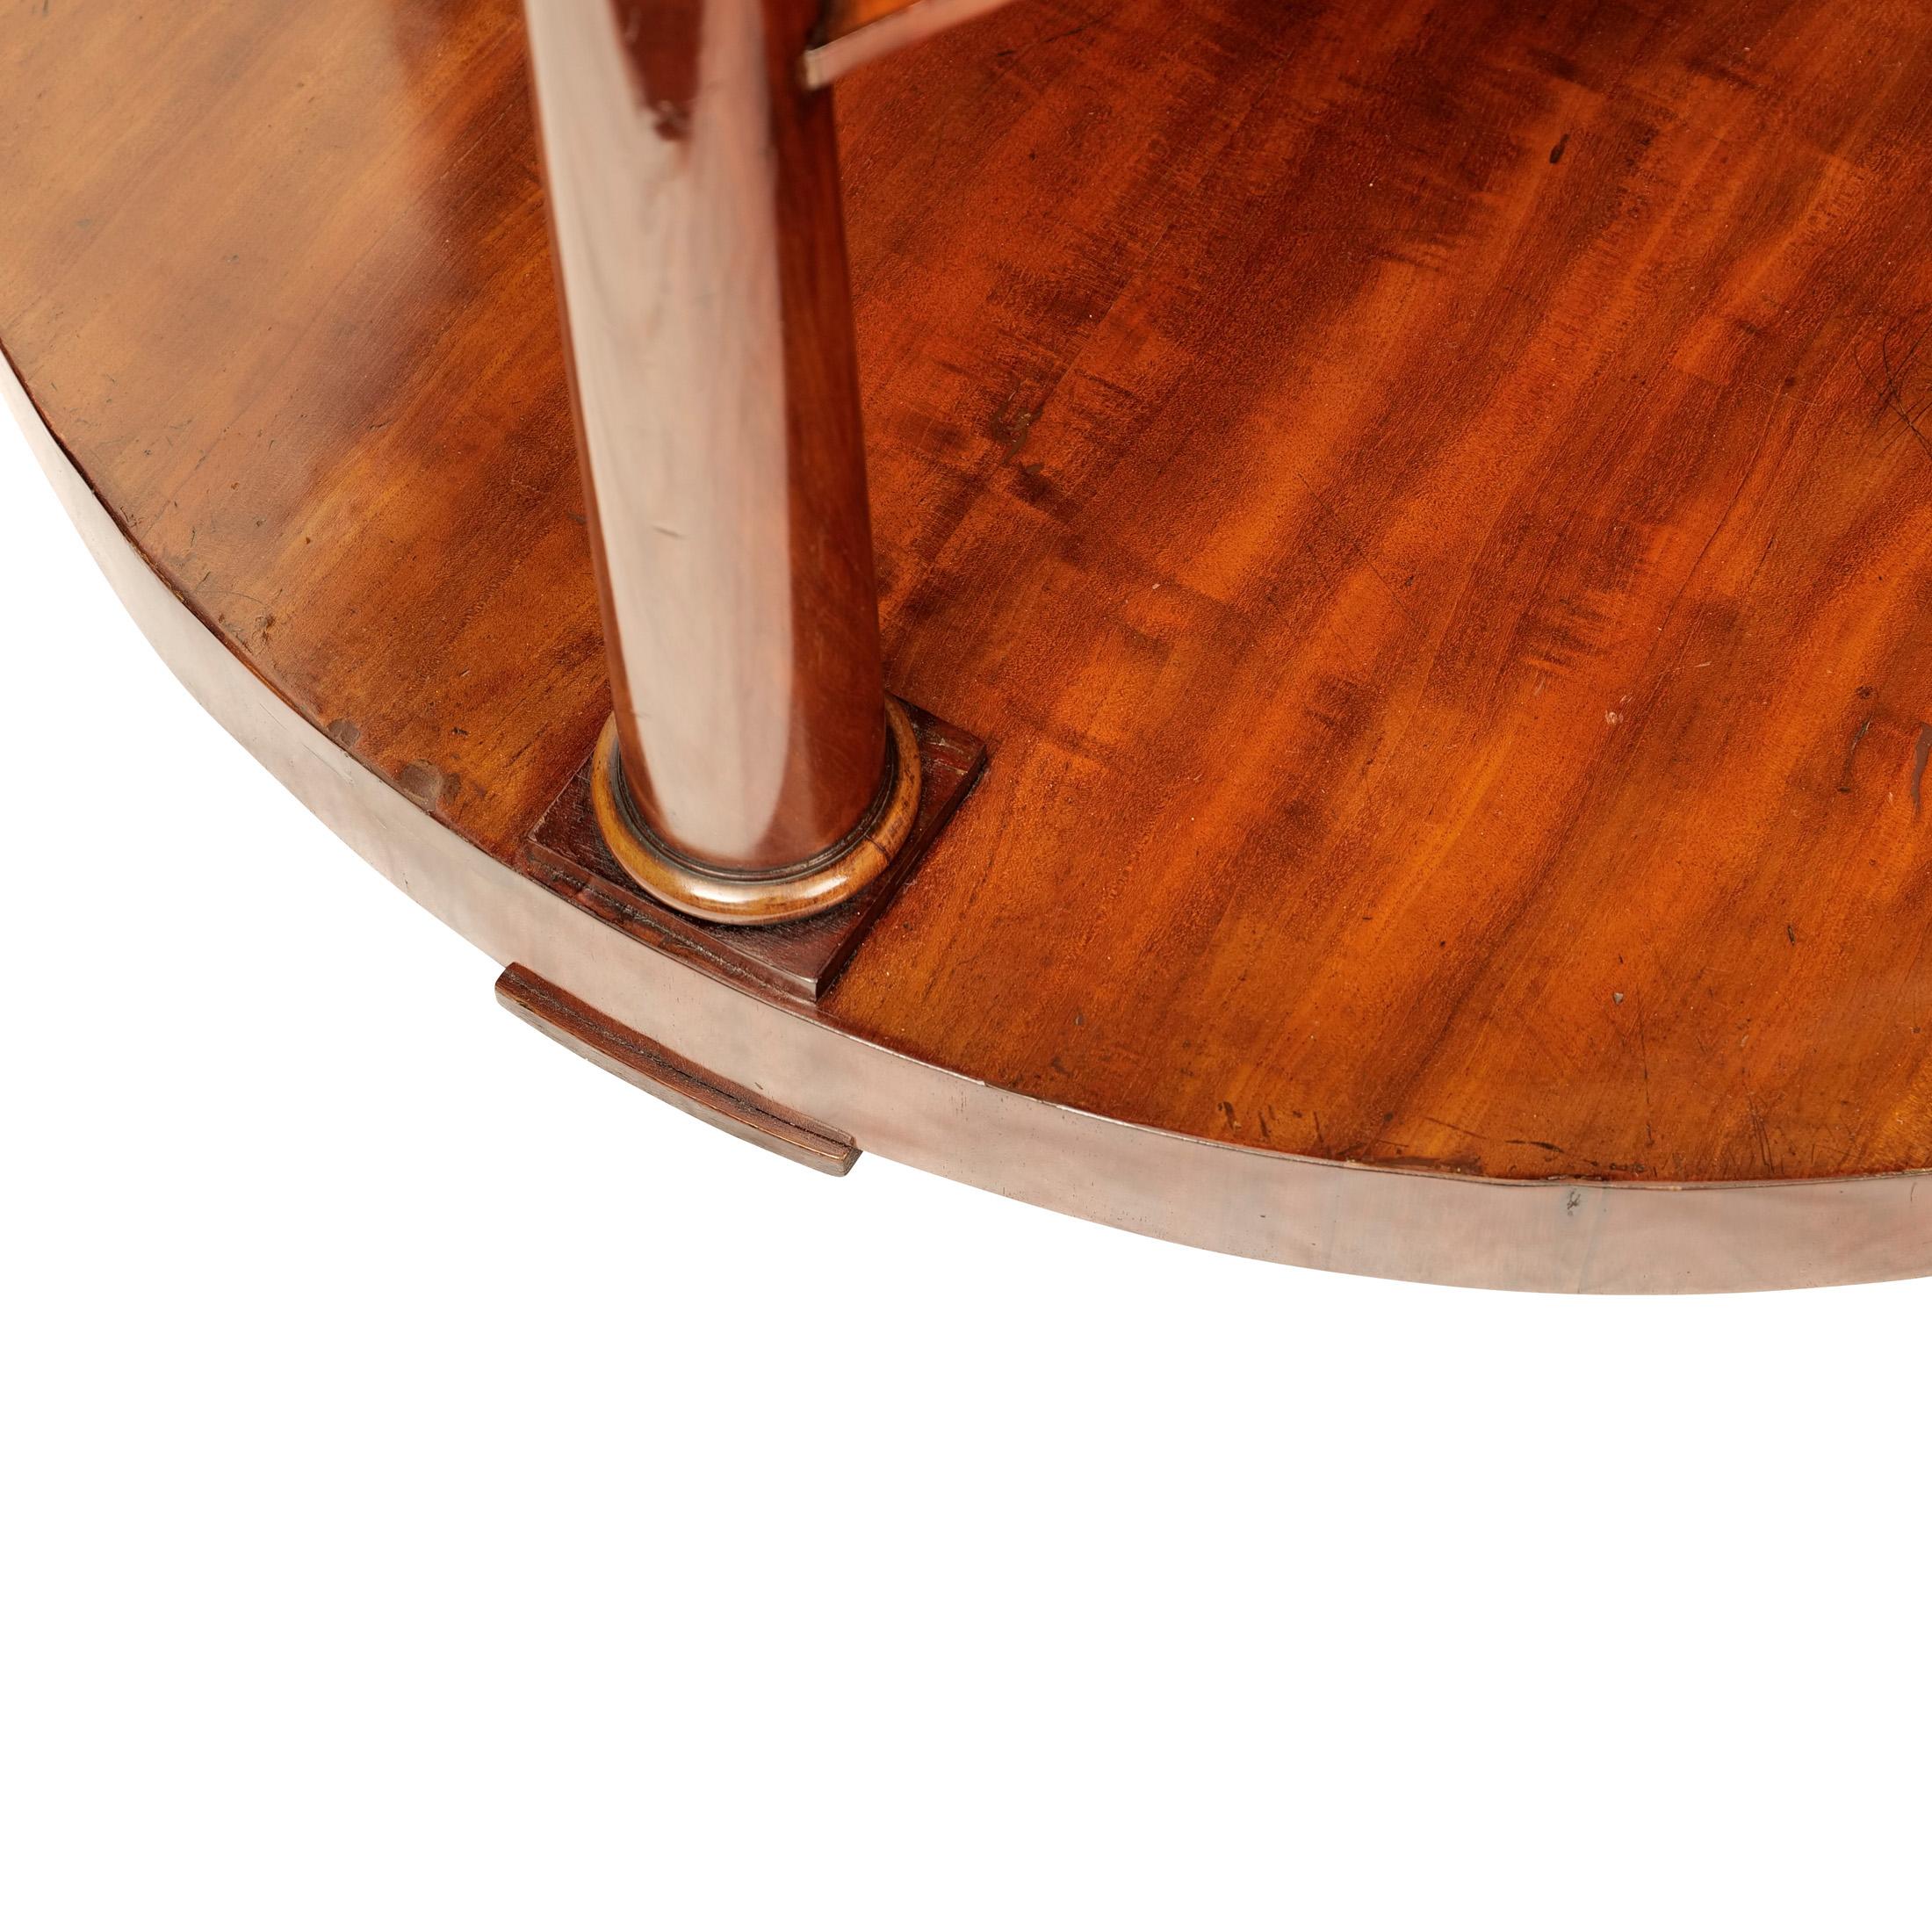 Biedermeier Spieltisch Demi Lune


Große Demi Lune Konsole, Biedermeier um 1830, Mahagoni furniert, Platte mit tiefem Rahmen, getragen von drei vollplastischen Säulen, dazugehöriger Sockel, restaurierter Zustand, Schellack-Handpolitur

Höhe: 88 cm,